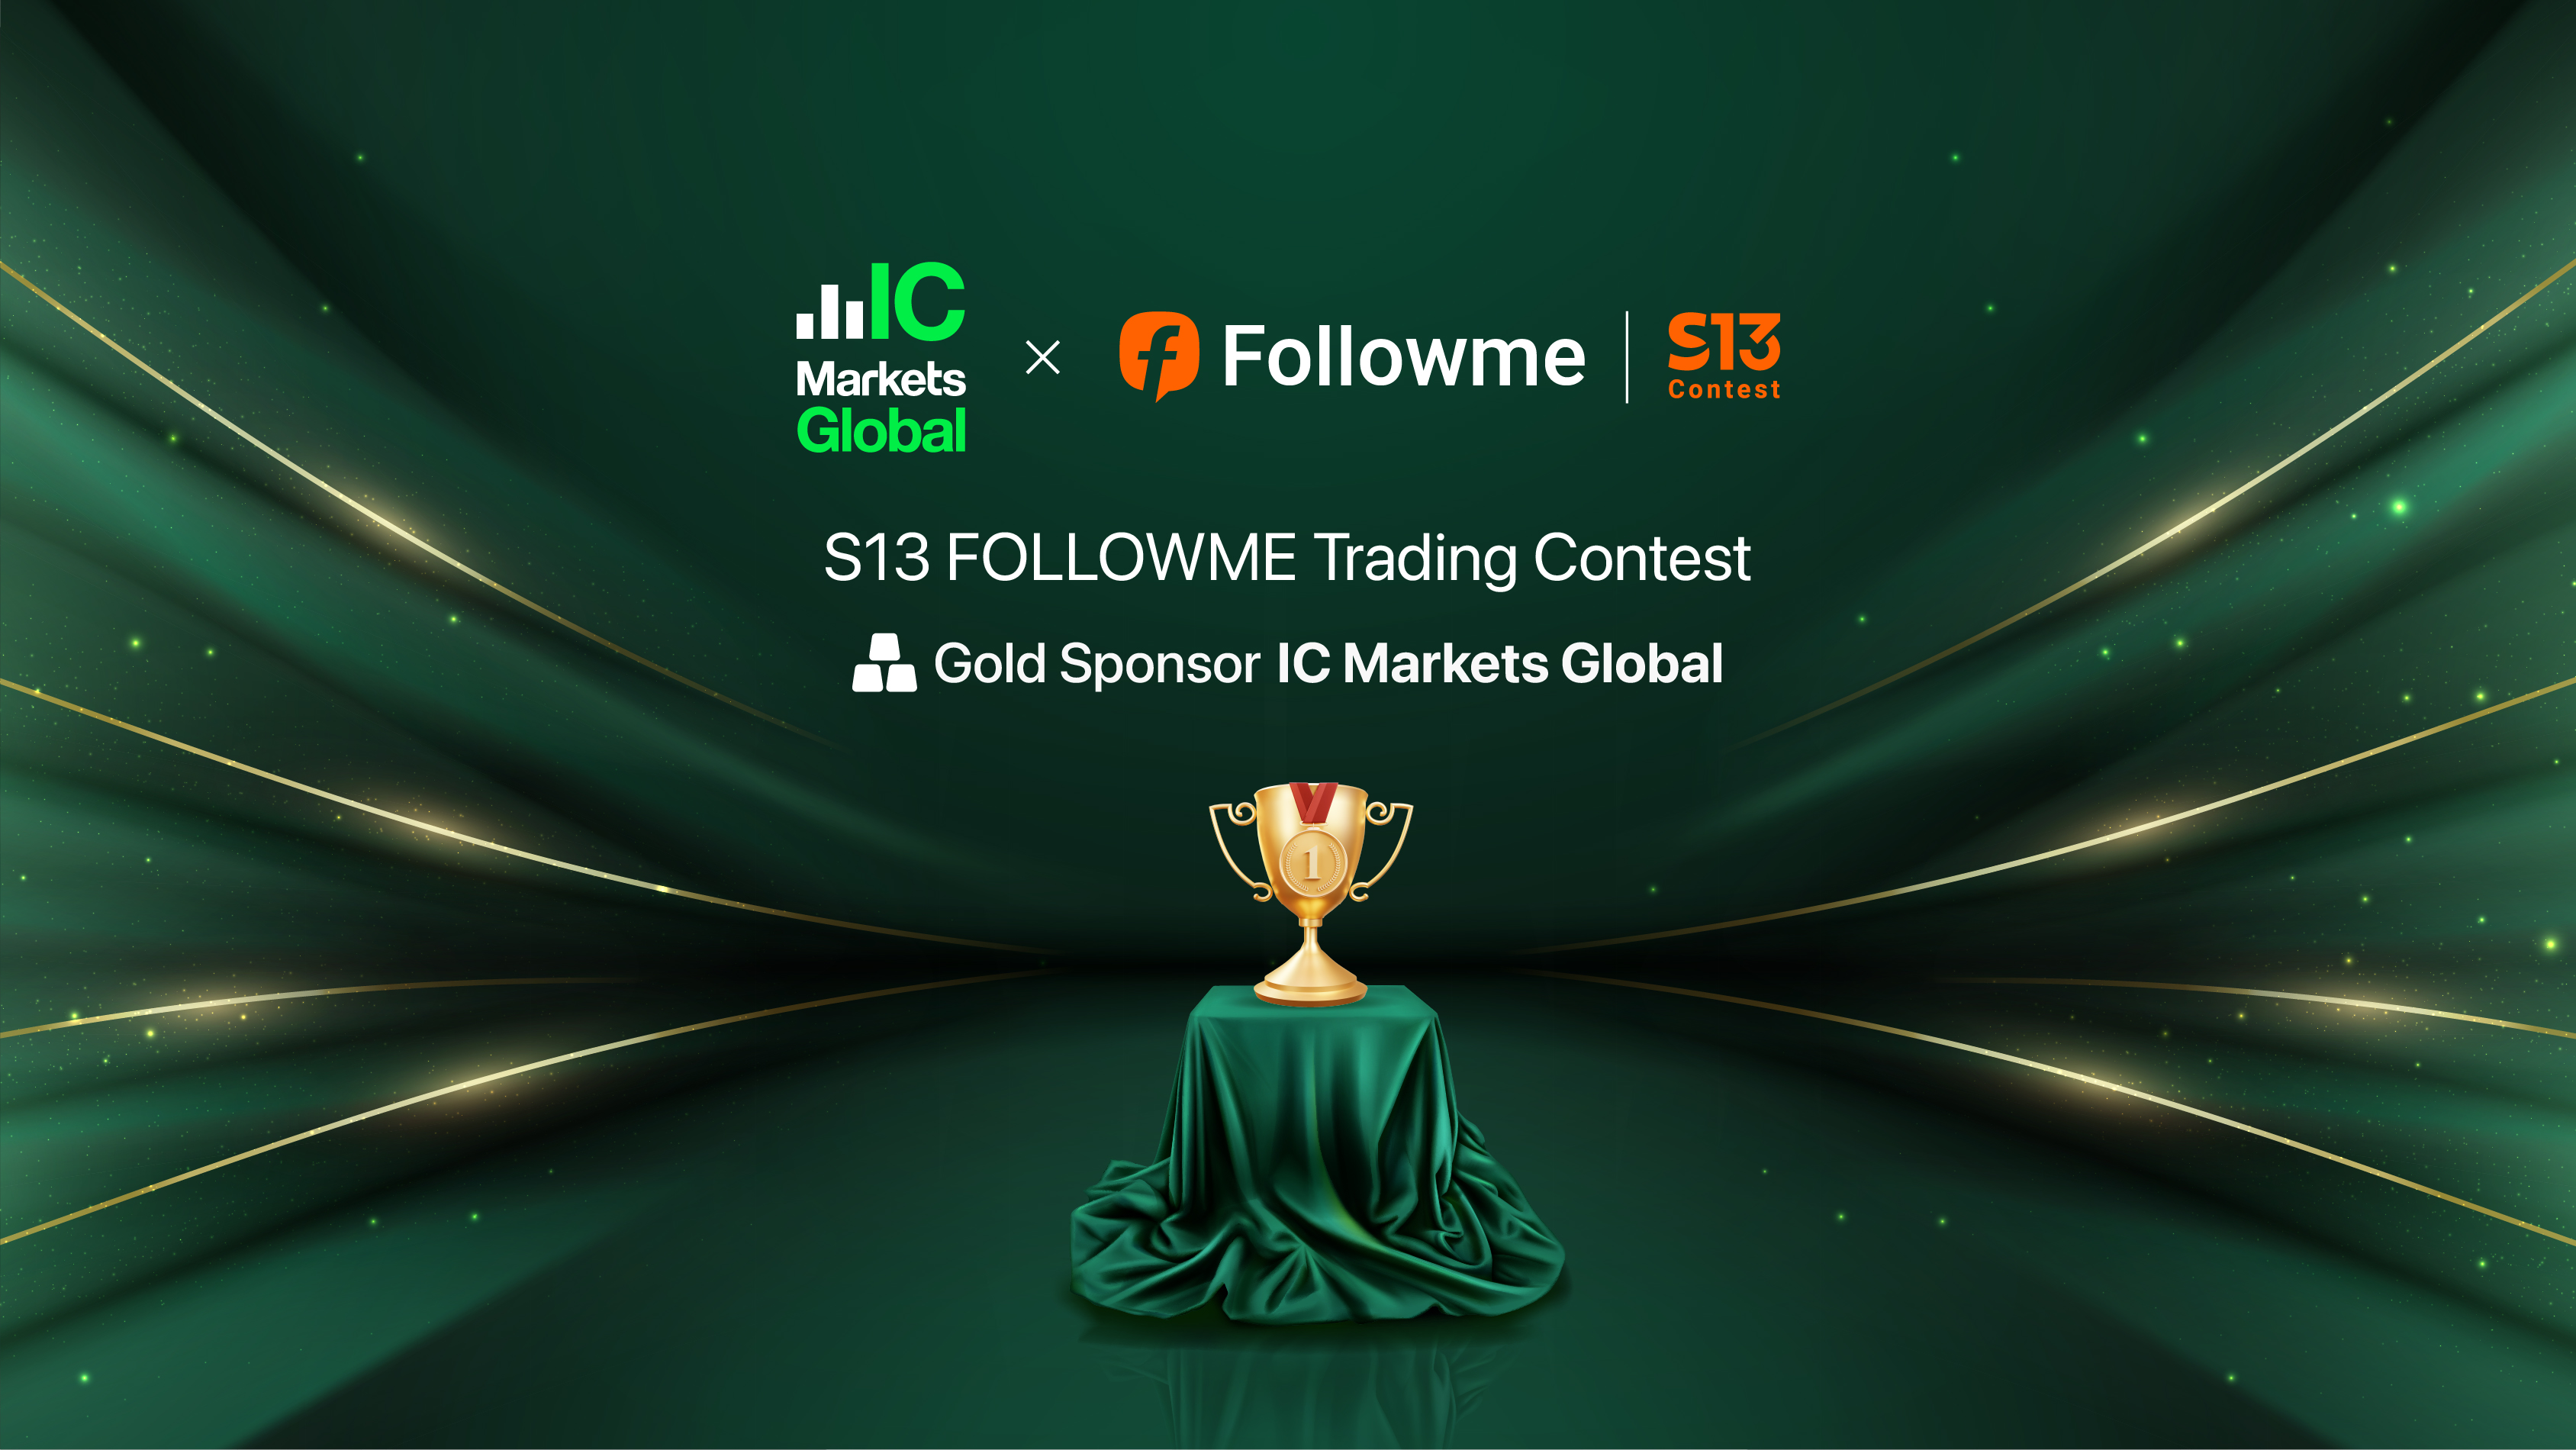 Accompany with IC Markets | Trading marathon, who will win?